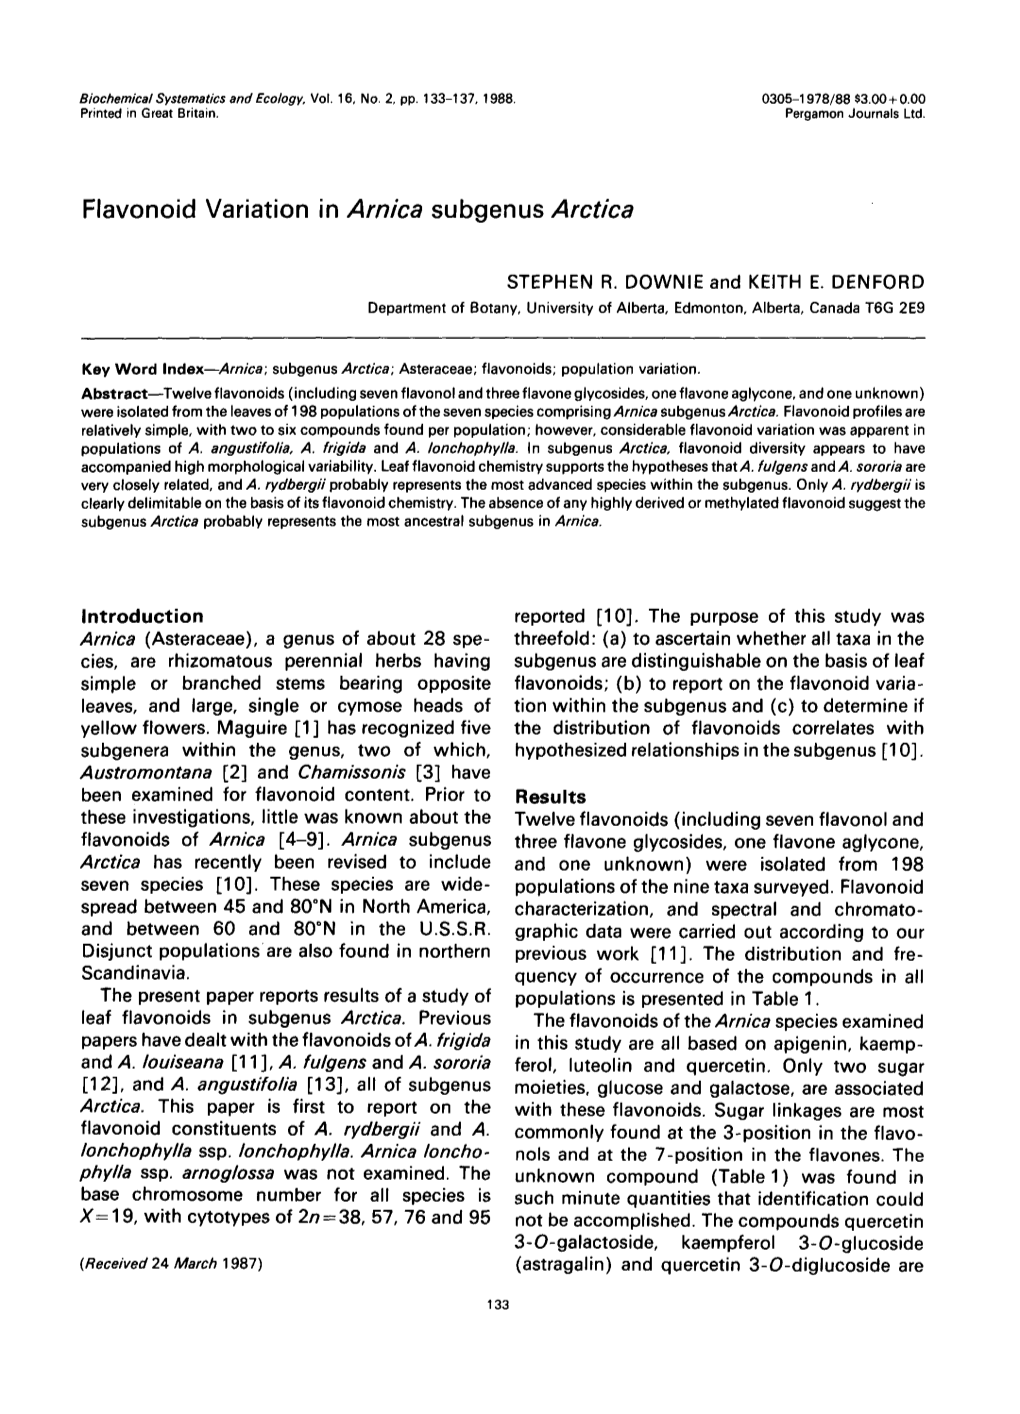 Flavonoid Variation in Arnica Subgenus Arctica